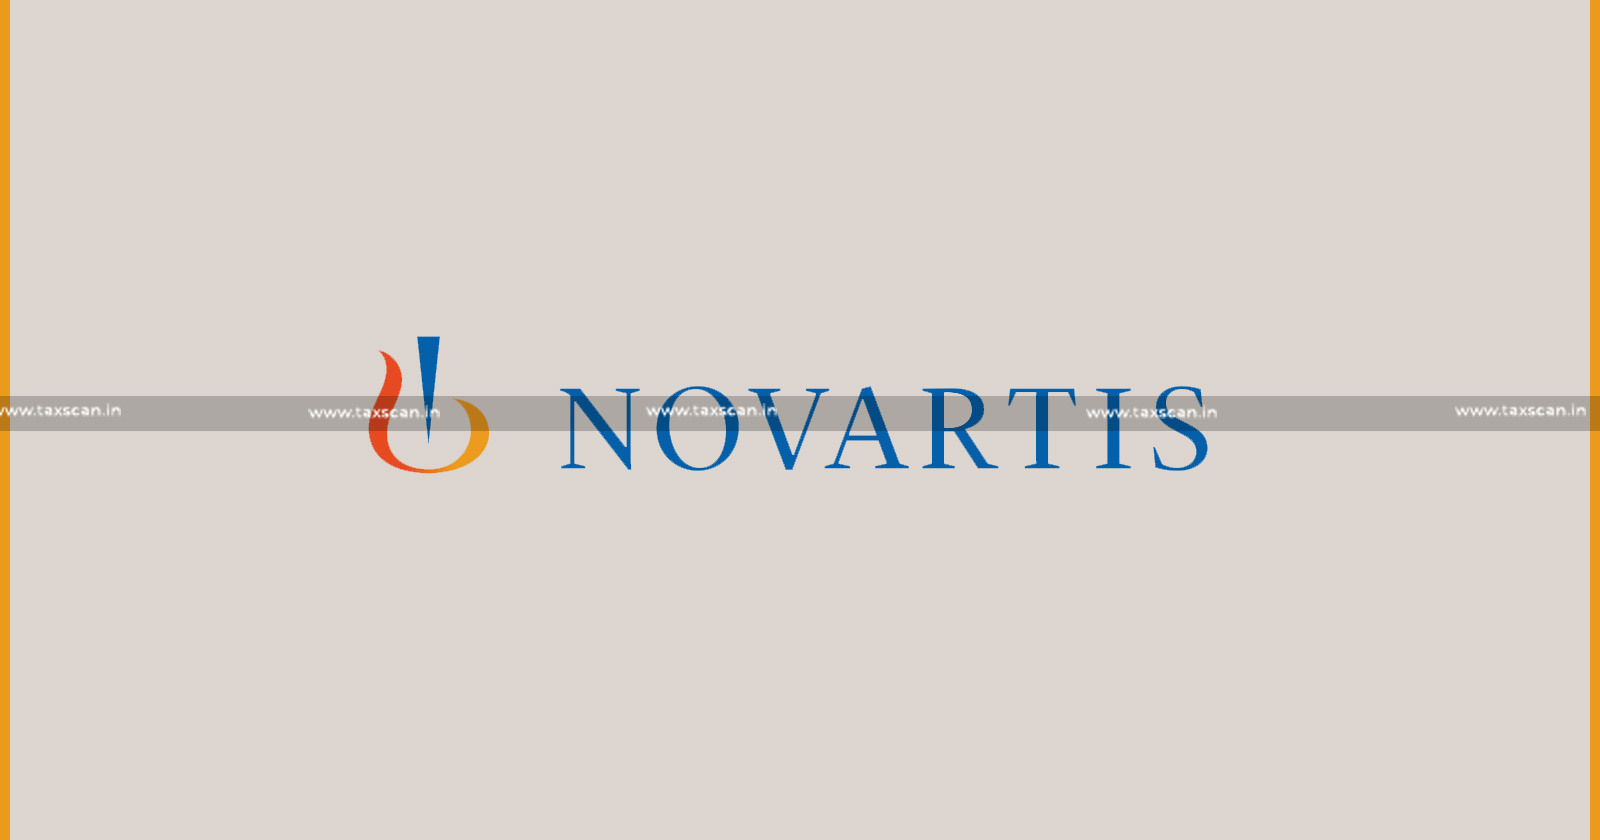 Relief - Novartis Healthcare - Relief to Novartis Healthcare - CESTAT - Taxable Services - taxscan